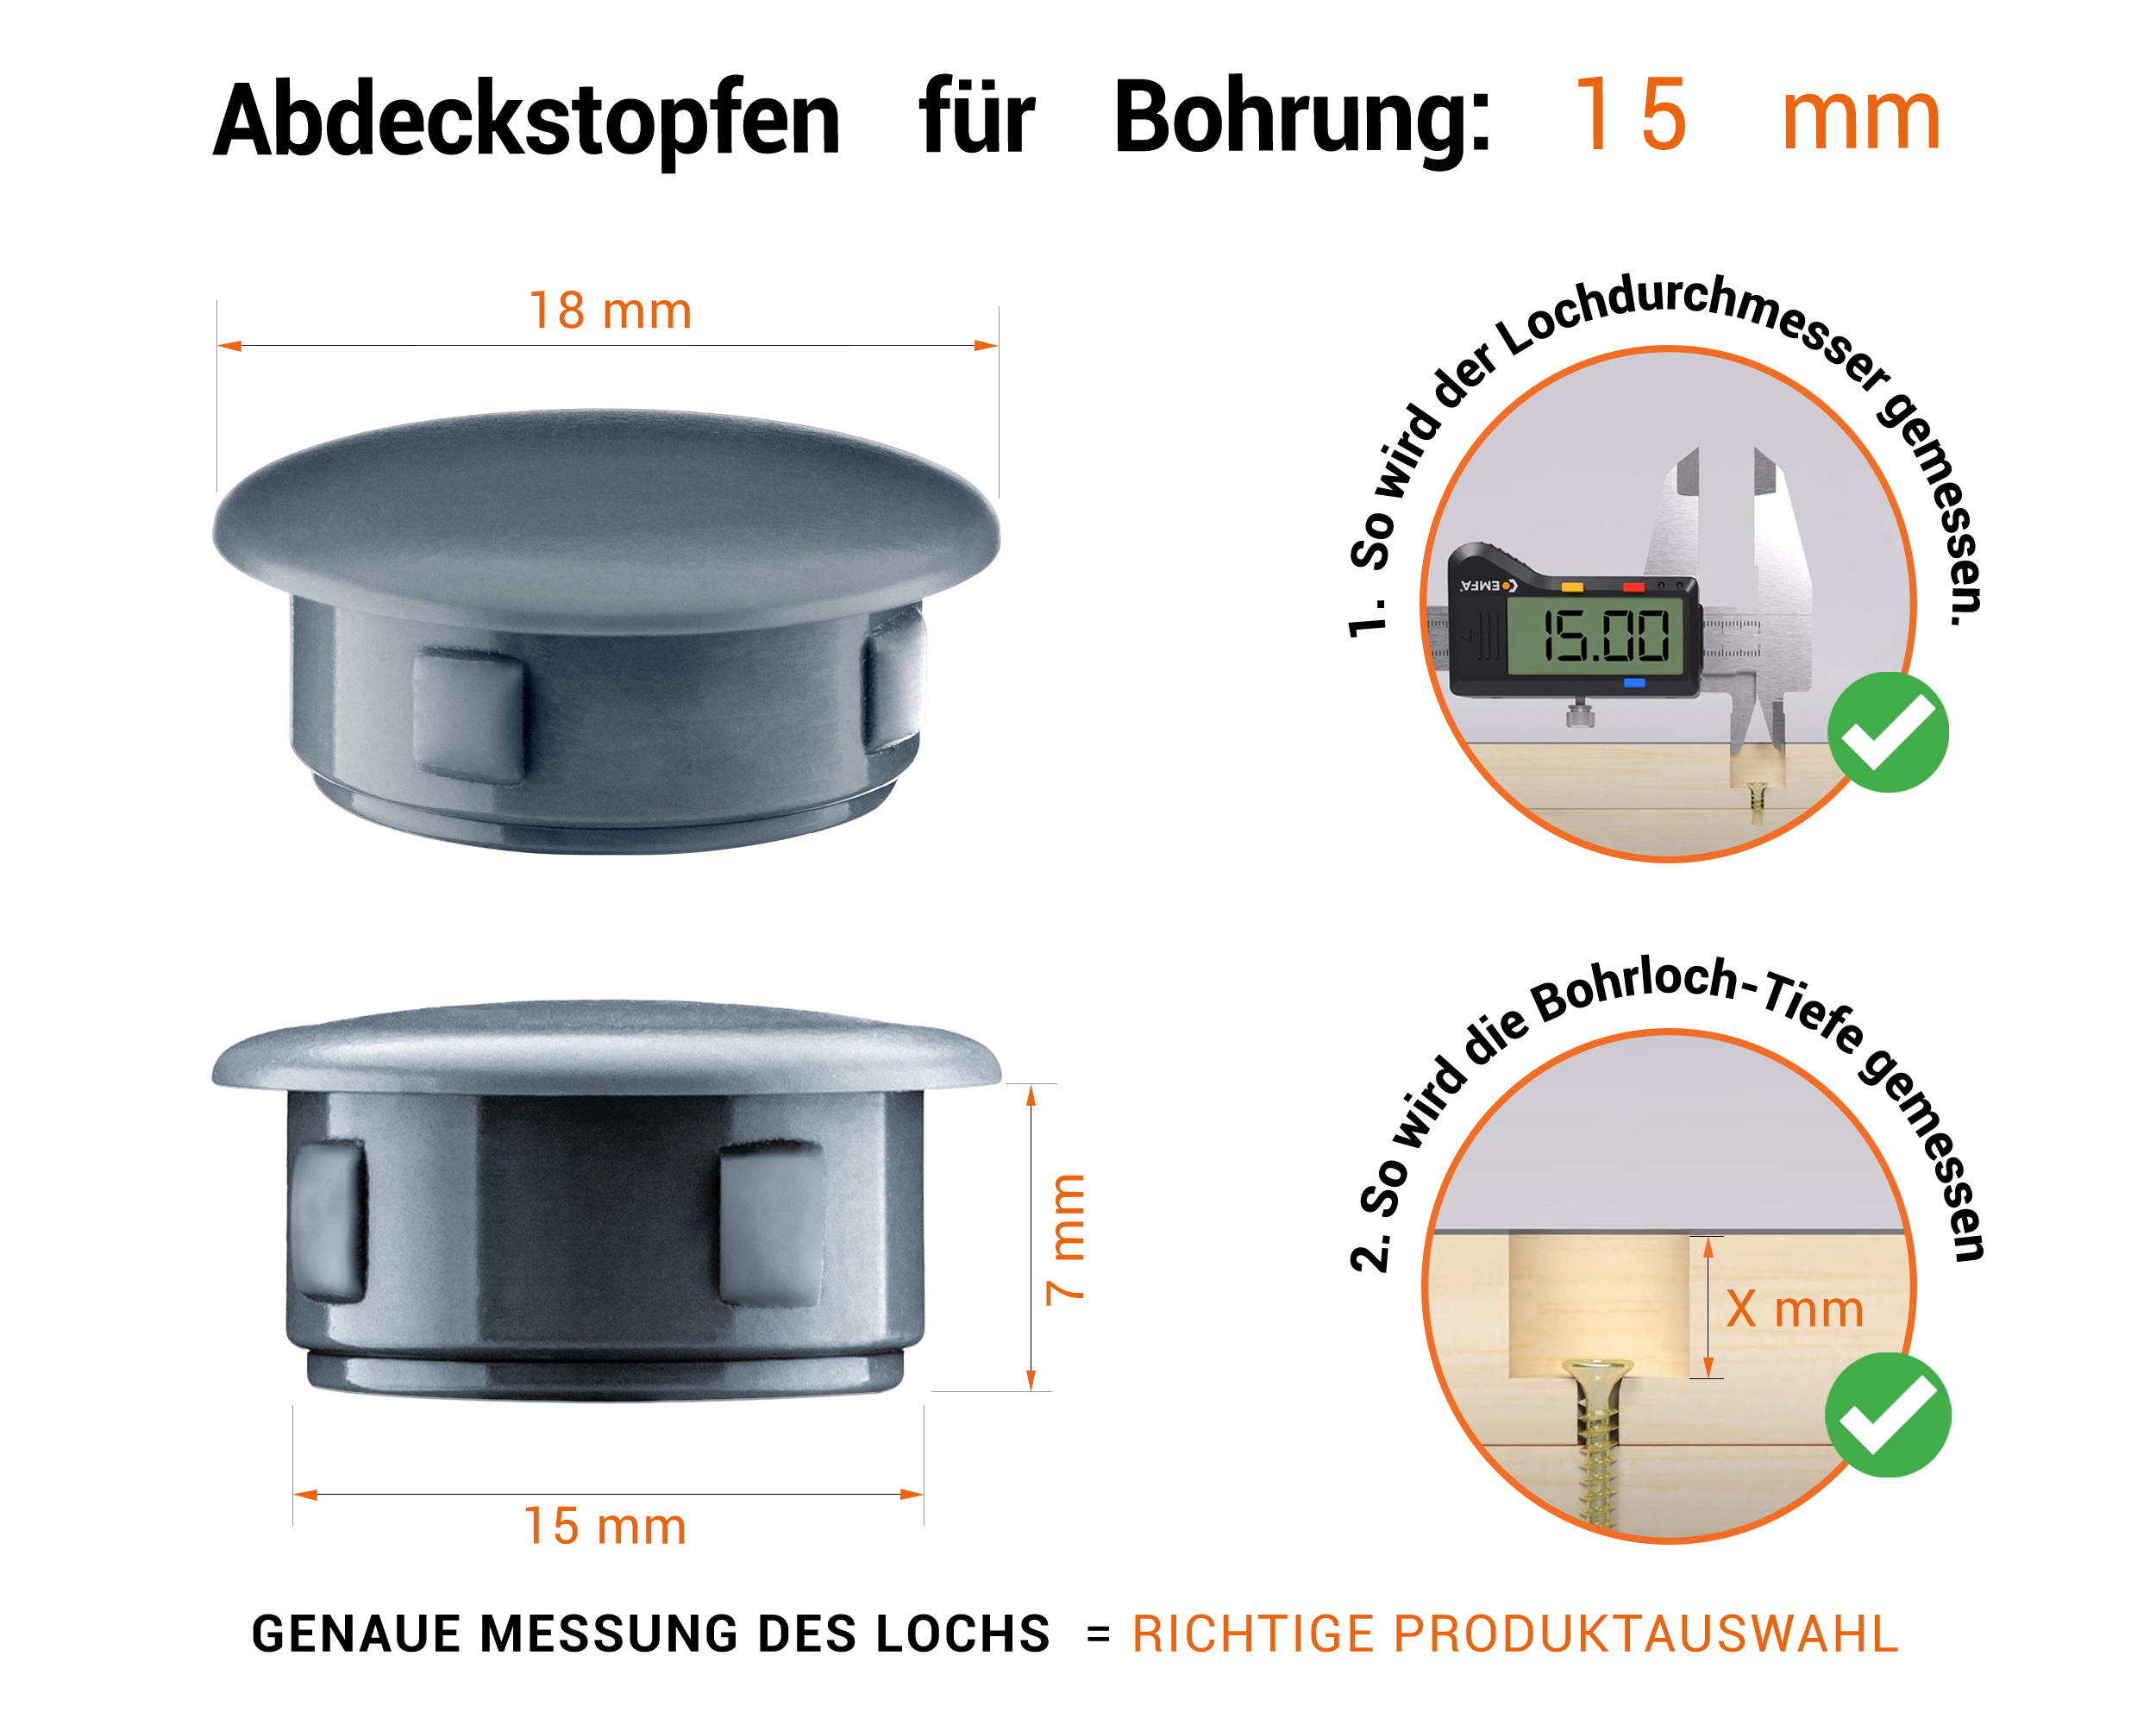 Anthrazite Blindstopfen aus Kunststoff für Bohrung 15 mmmm mit technischen Abmessungen und Anleitung für korrekte Messung